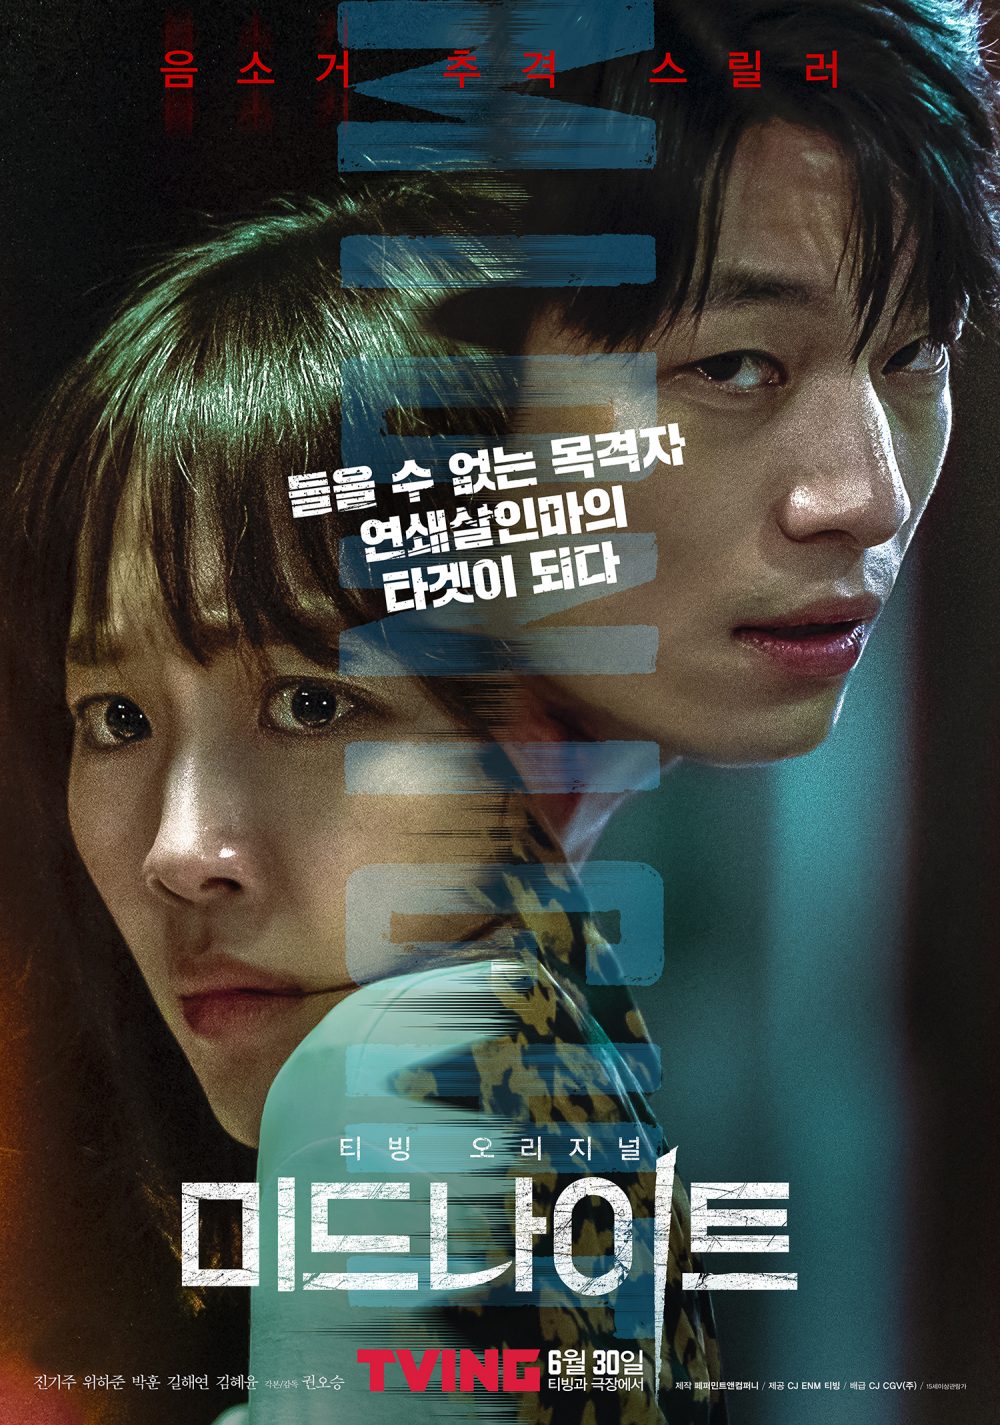 Phim Jin Ki Joo đóng: Nửa đêm - Midnight (2021)